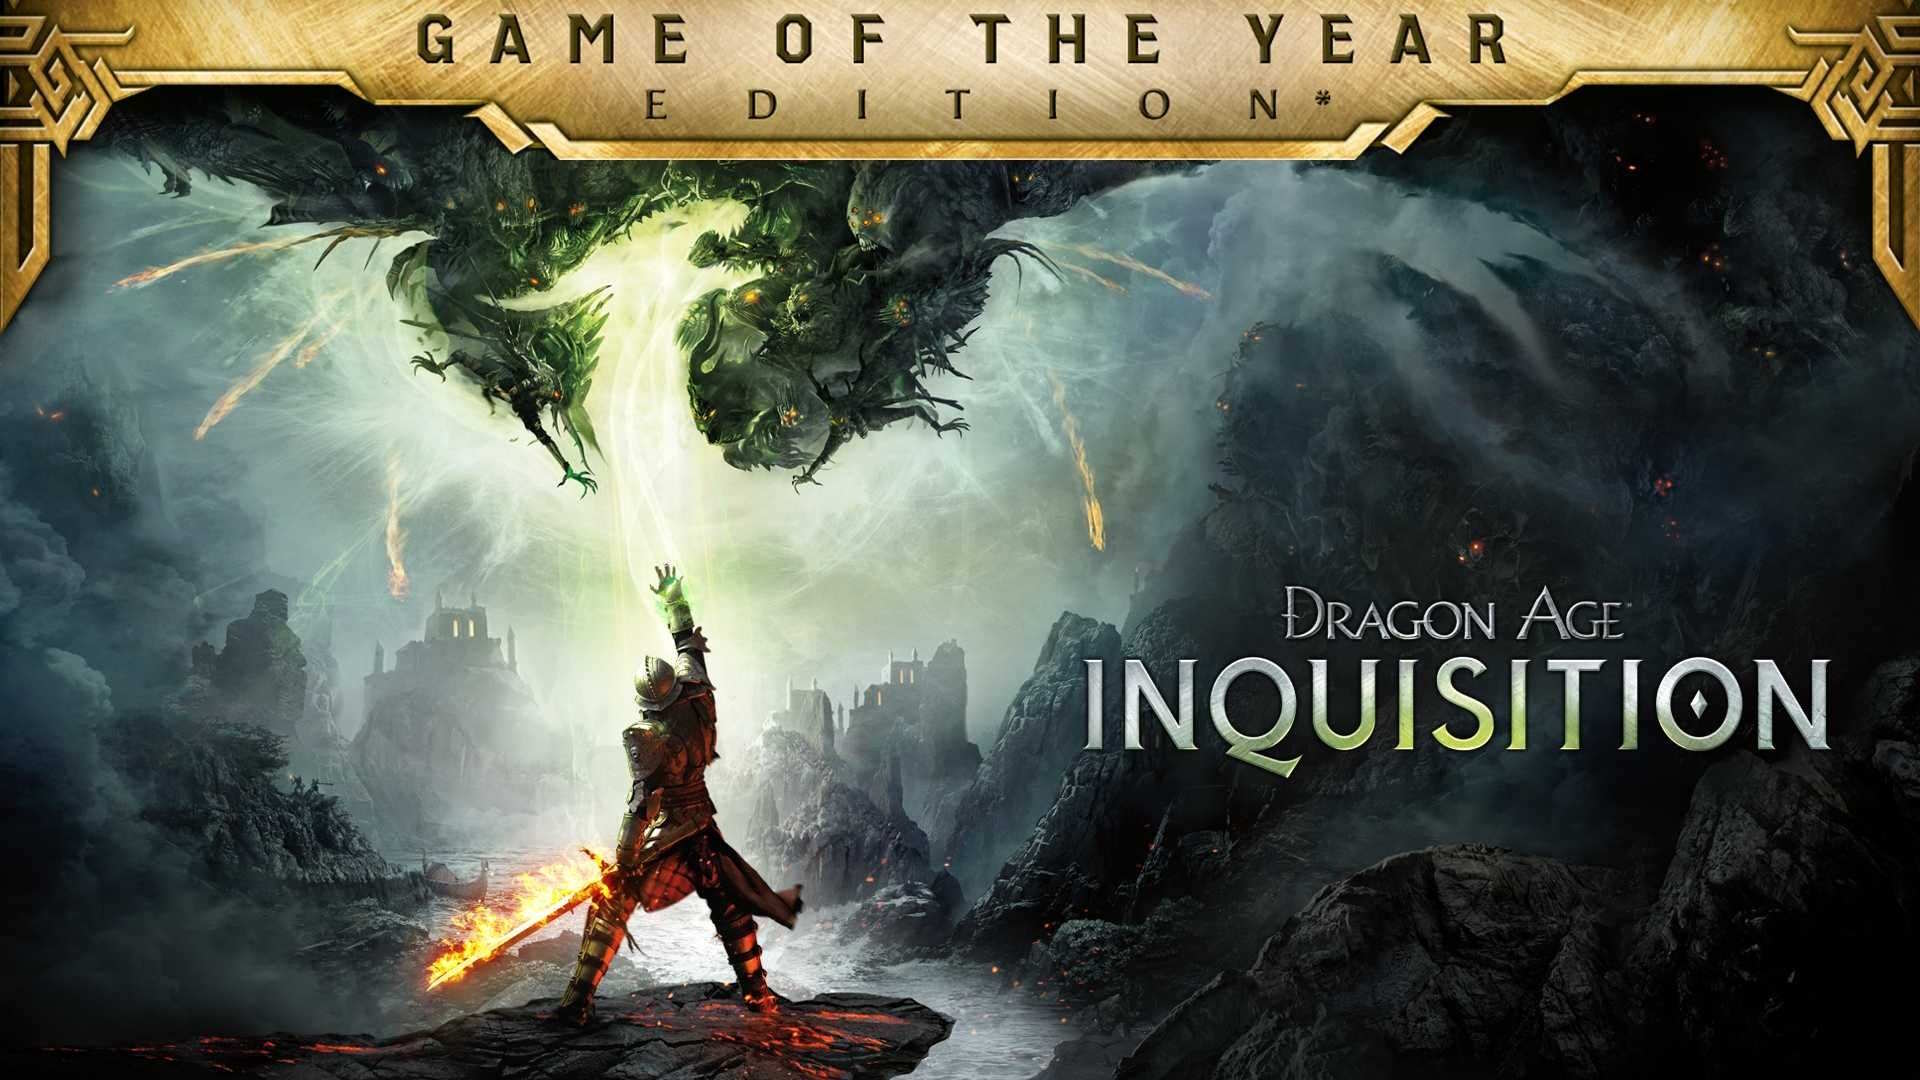 Dragon Age: Inquisition - Edizione Gioco dell'Anno ora Gratis su Epic Games Store!